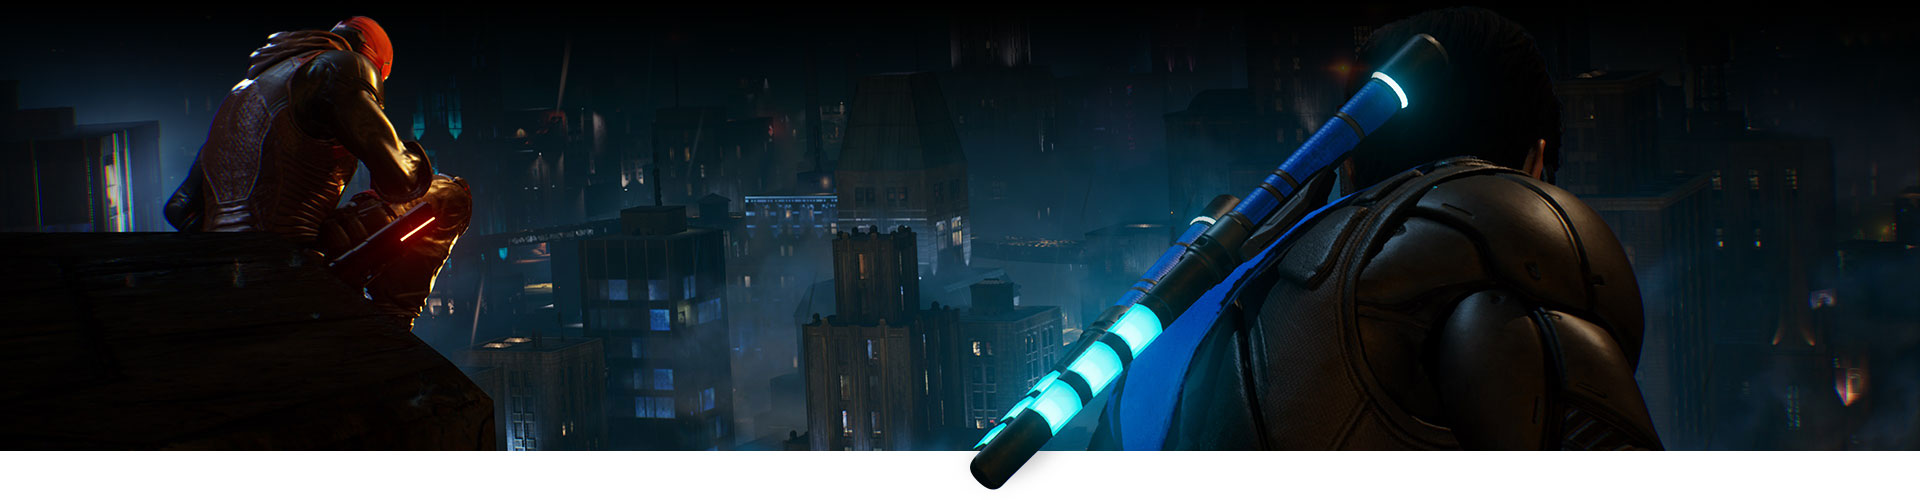 Cappuccio Rosso e Nightwing sono seduti su un tetto affacciato sulla città.